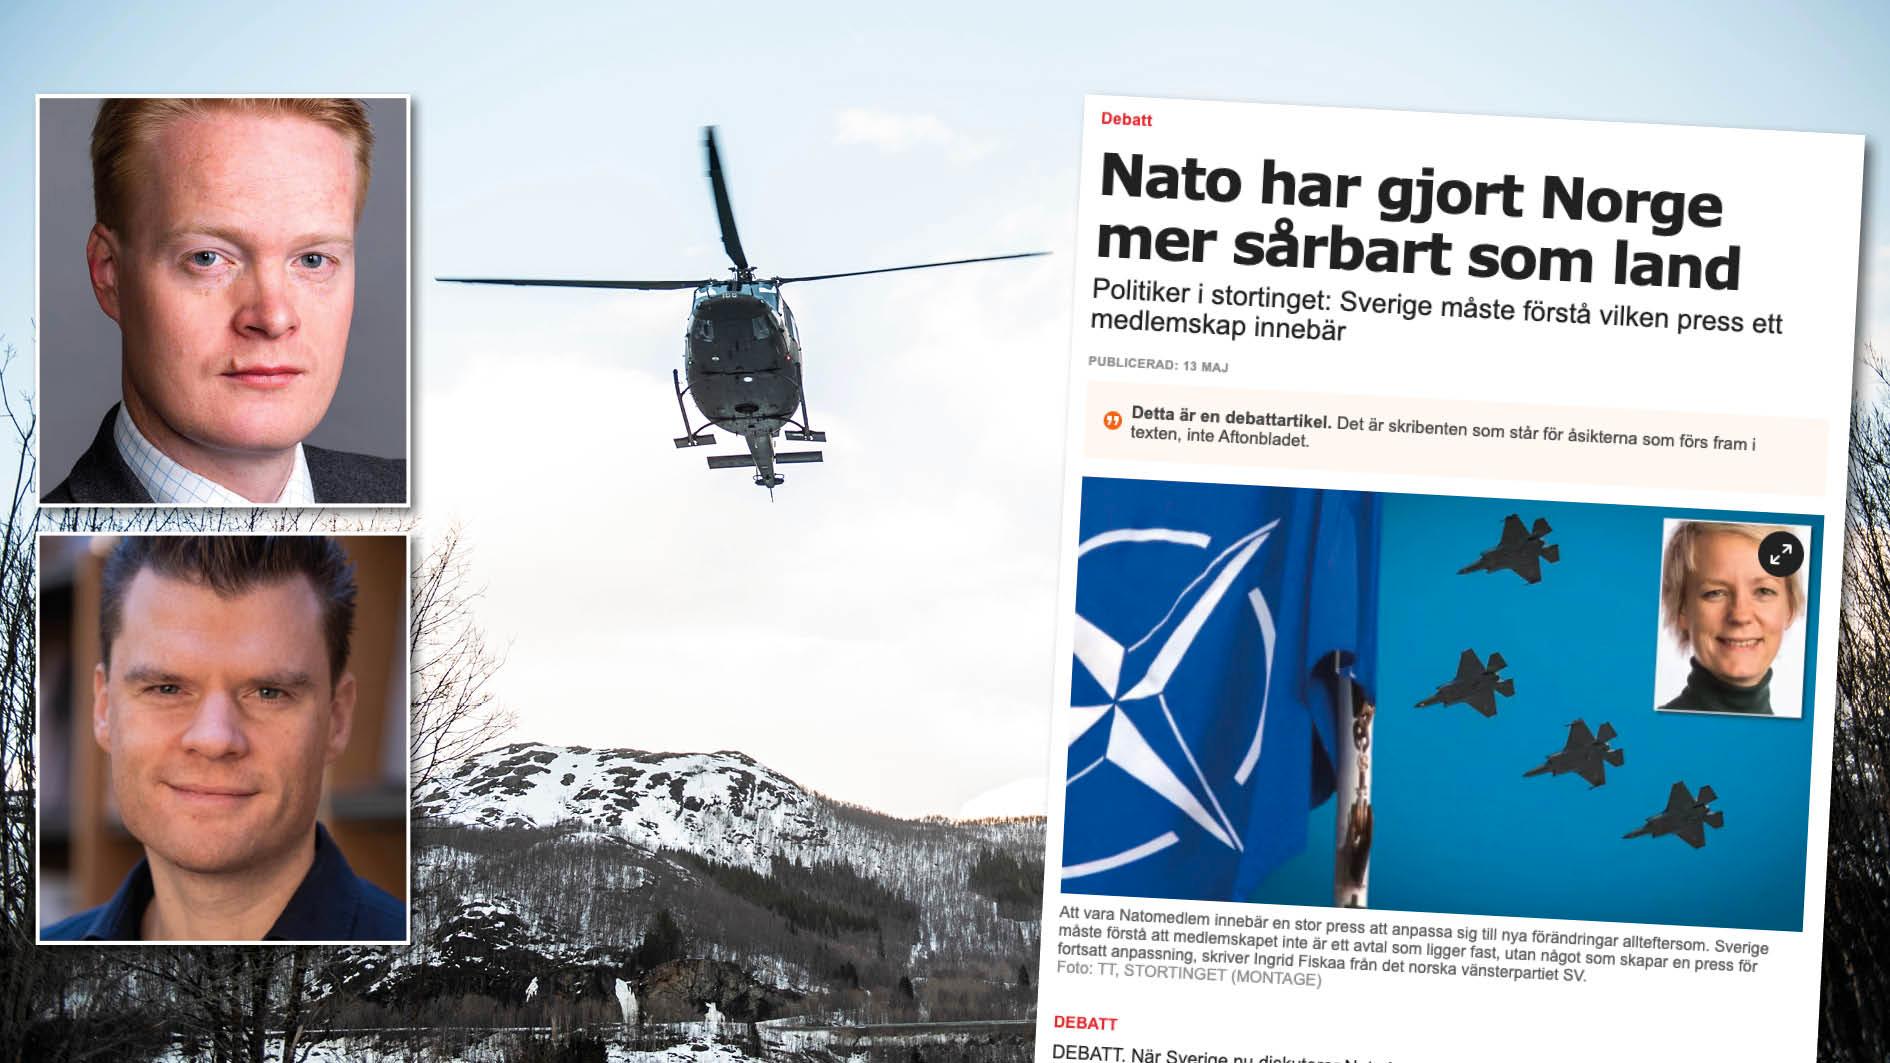 Det är en utbredd myt inom den yttre vänstern att det norska försvaret omorganiserats efter det kalla kriget till följd av påtryckningar från Nato och USA. Det är inte sant. Replik från Magnus Håkenstad och Andreas C. Halse.